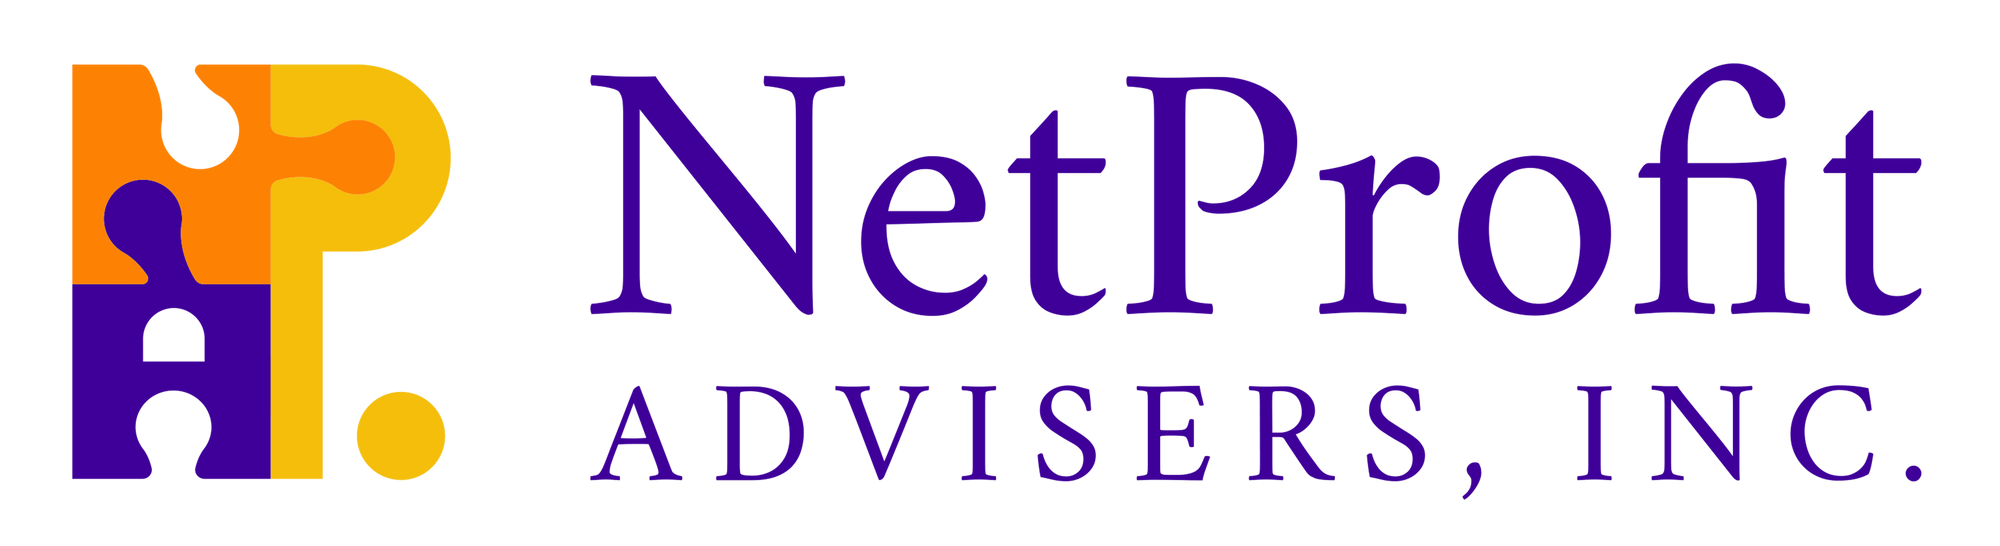 NetProfit Advisers Inc